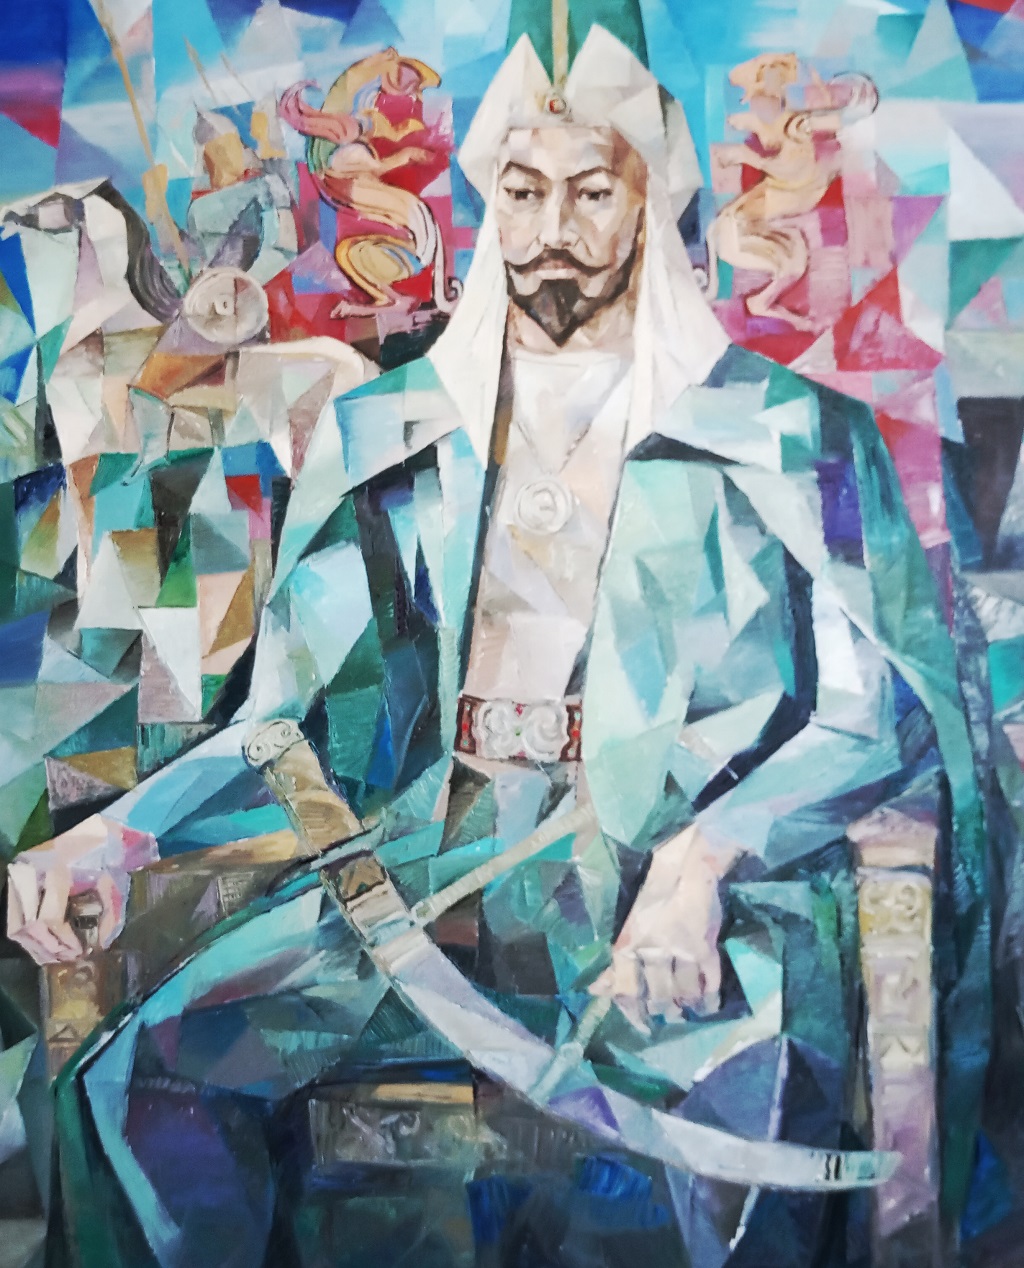 Kazakistanlı 6 Ressamın 30 Eserinden Oluşan “Kazakistan Sanatçıları Resim Sergisi” Çalışma ve Sosyal Güvenlik Bakanı Faiz Sucuoğlu Tarafından Açılıyor…